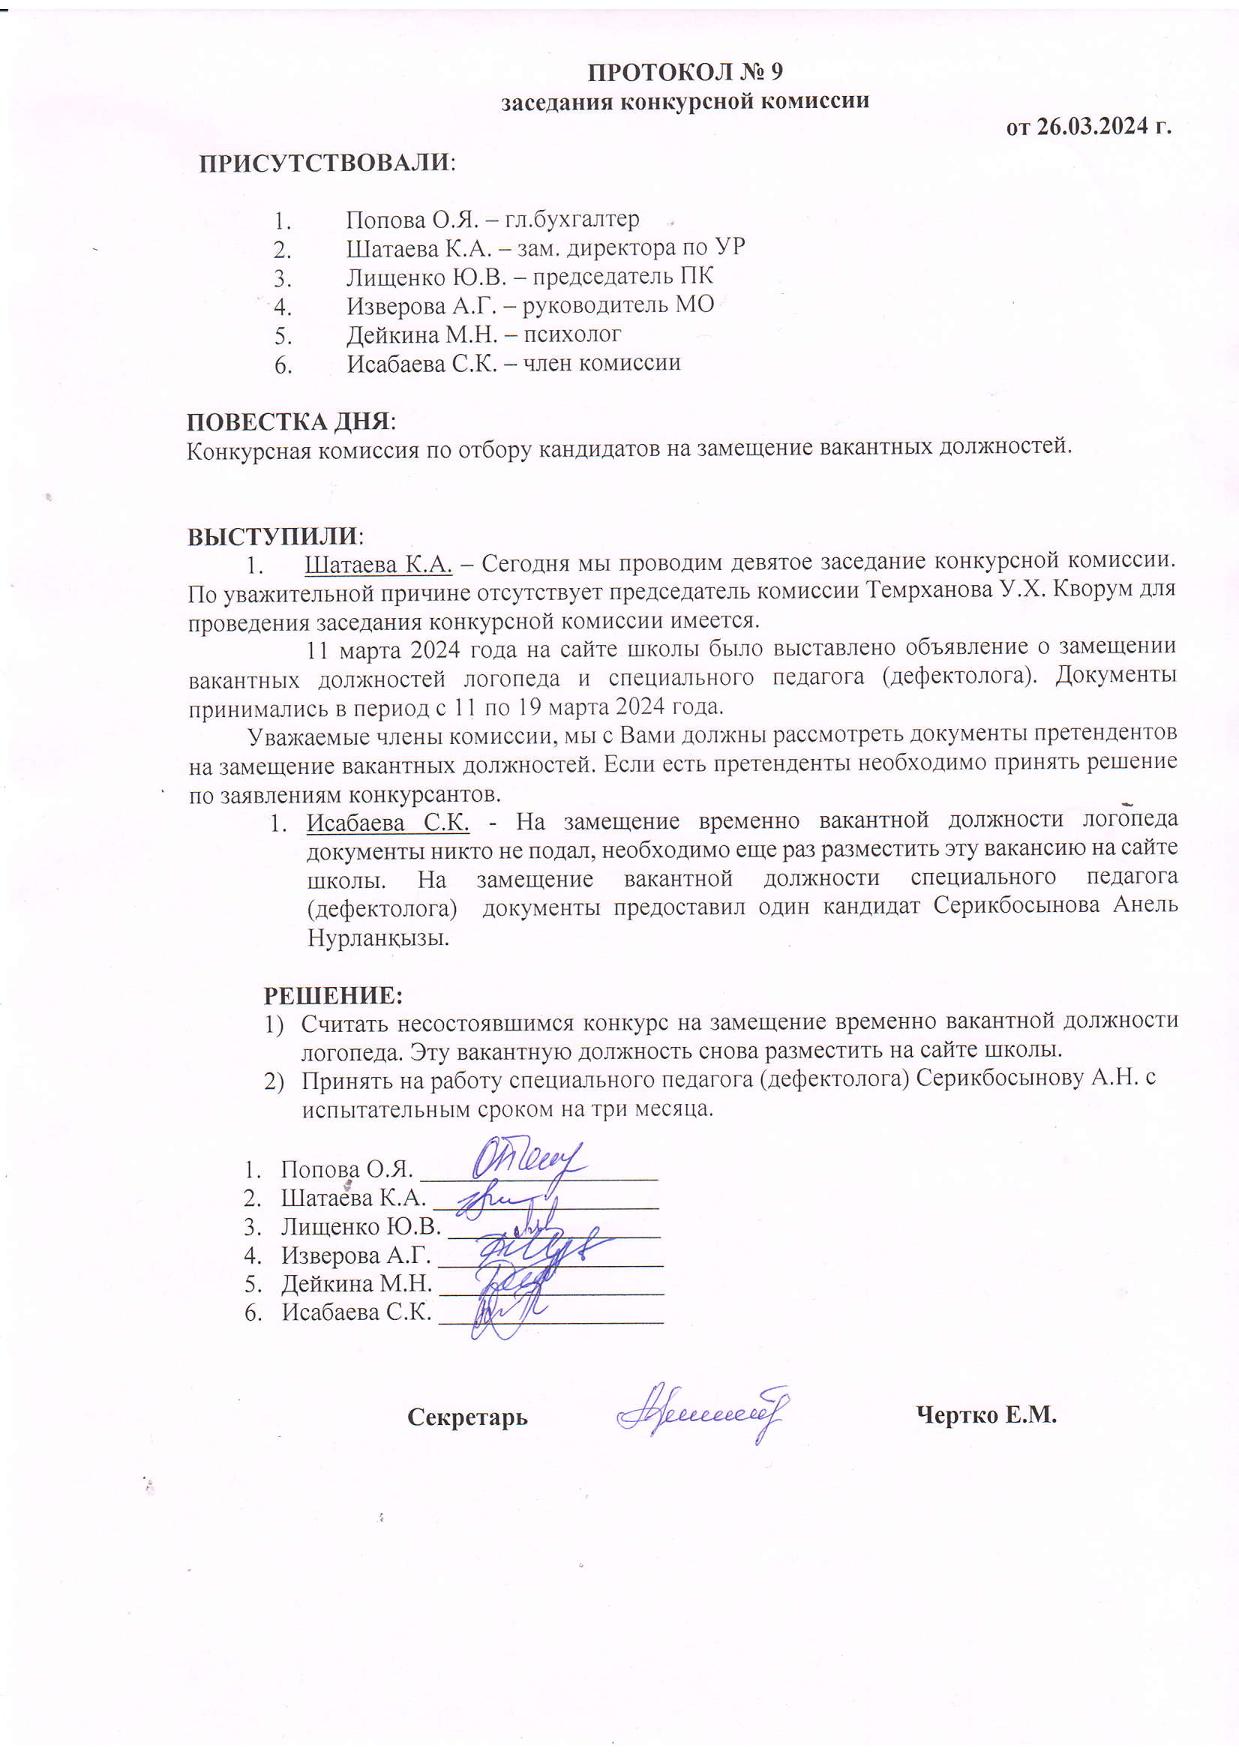 ПРОТОКОЛ №9 заседания конкурсной комиссии от 26.03.2024г.